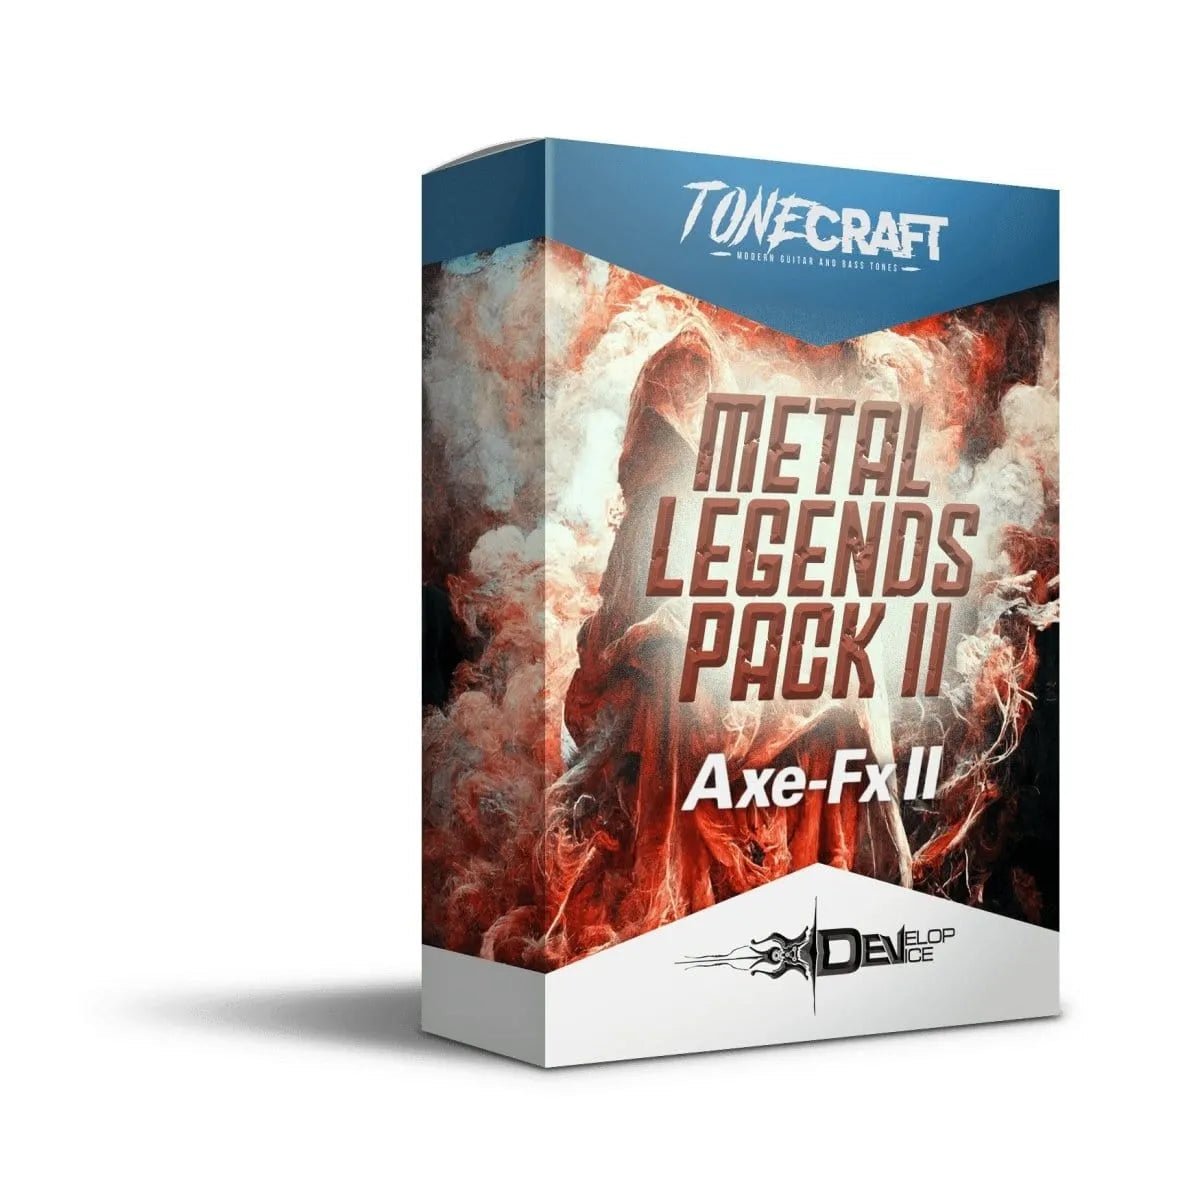 Metal Legends Pack II for Fractal Axe-Fx II - Fractal Axe Fx II Presets - Develop Device Studio